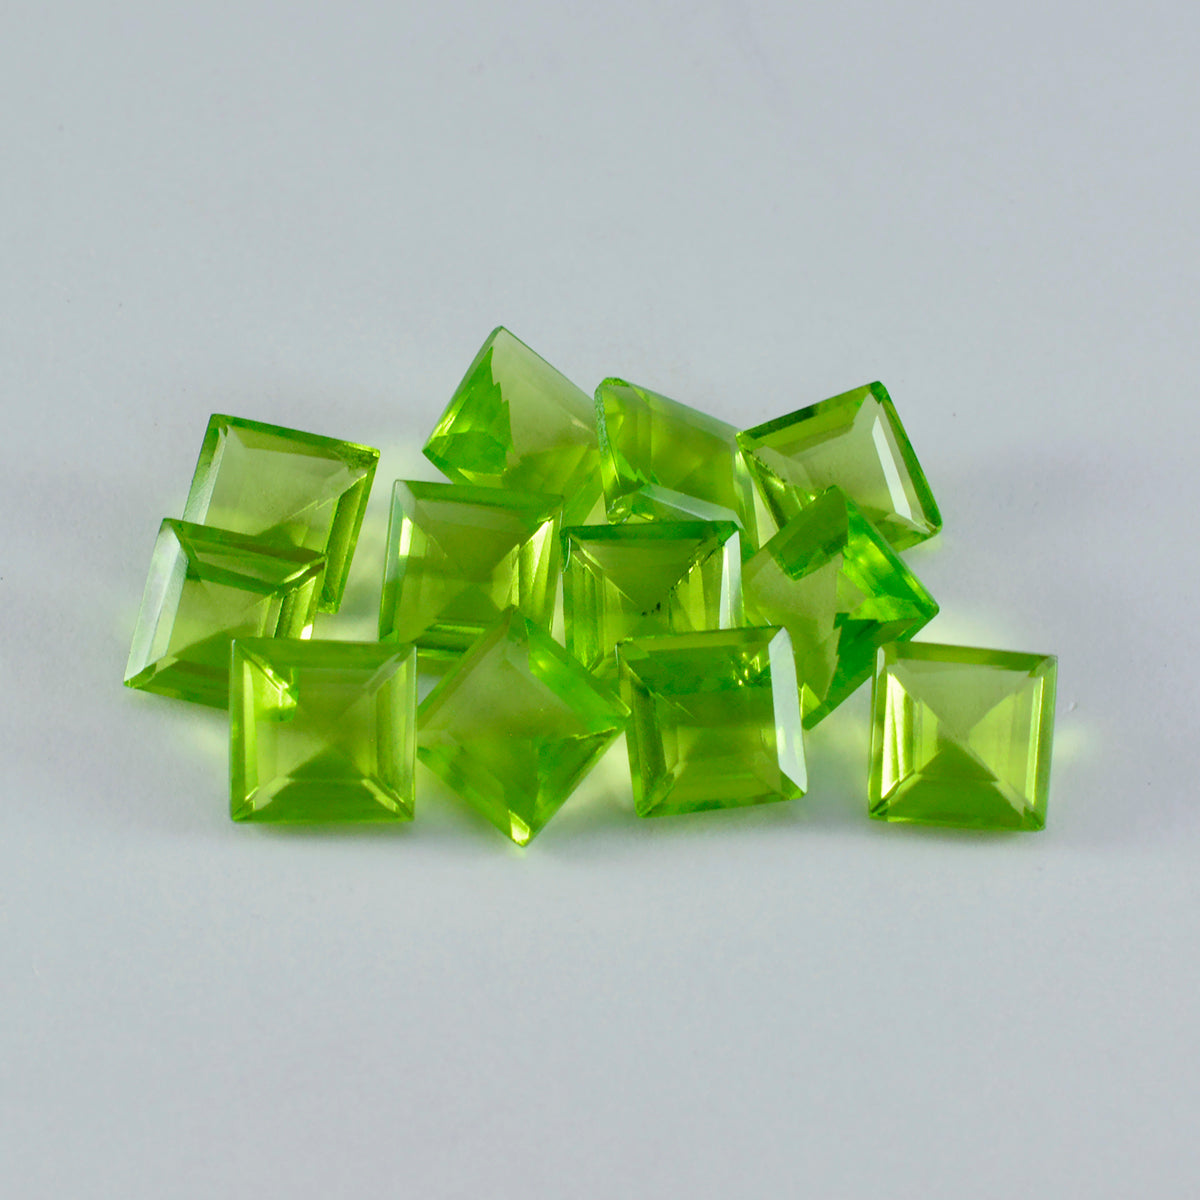 riyogems 1 шт. зеленый перидот cz граненый 6x6 мм квадратной формы довольно качественный свободный камень